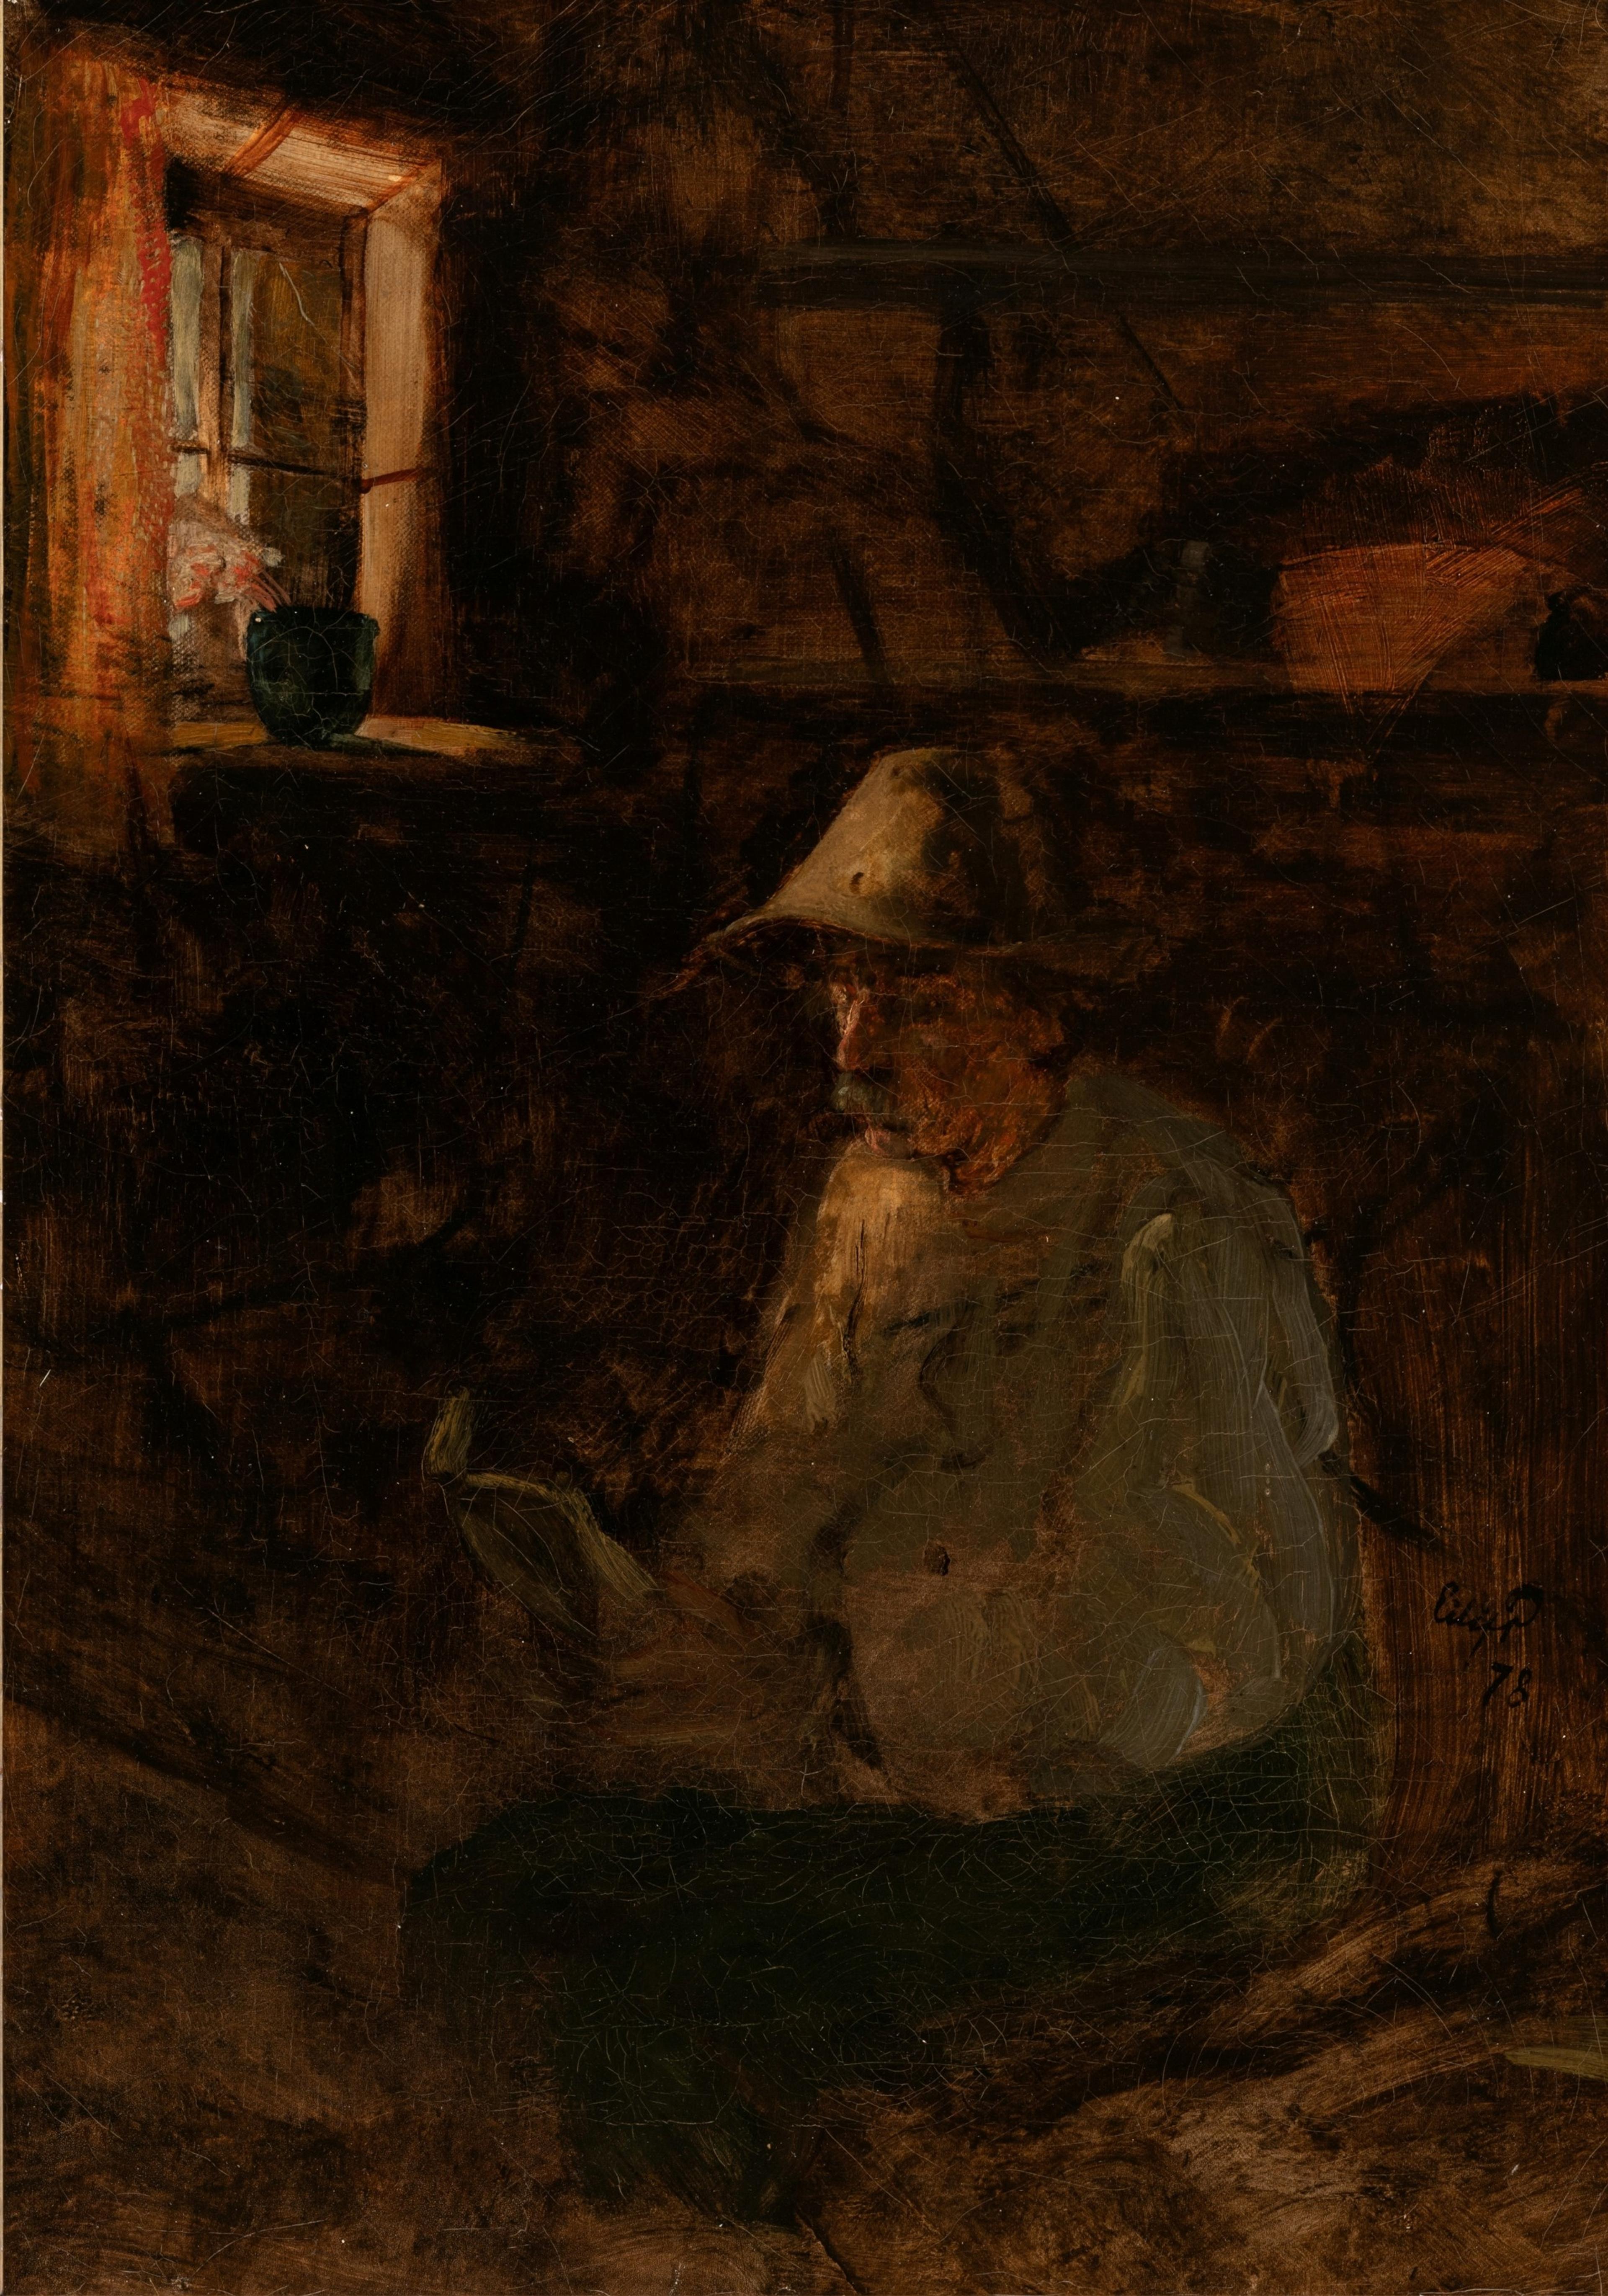 Maleri i mørke bruntoner som viser en mann som leser en bok